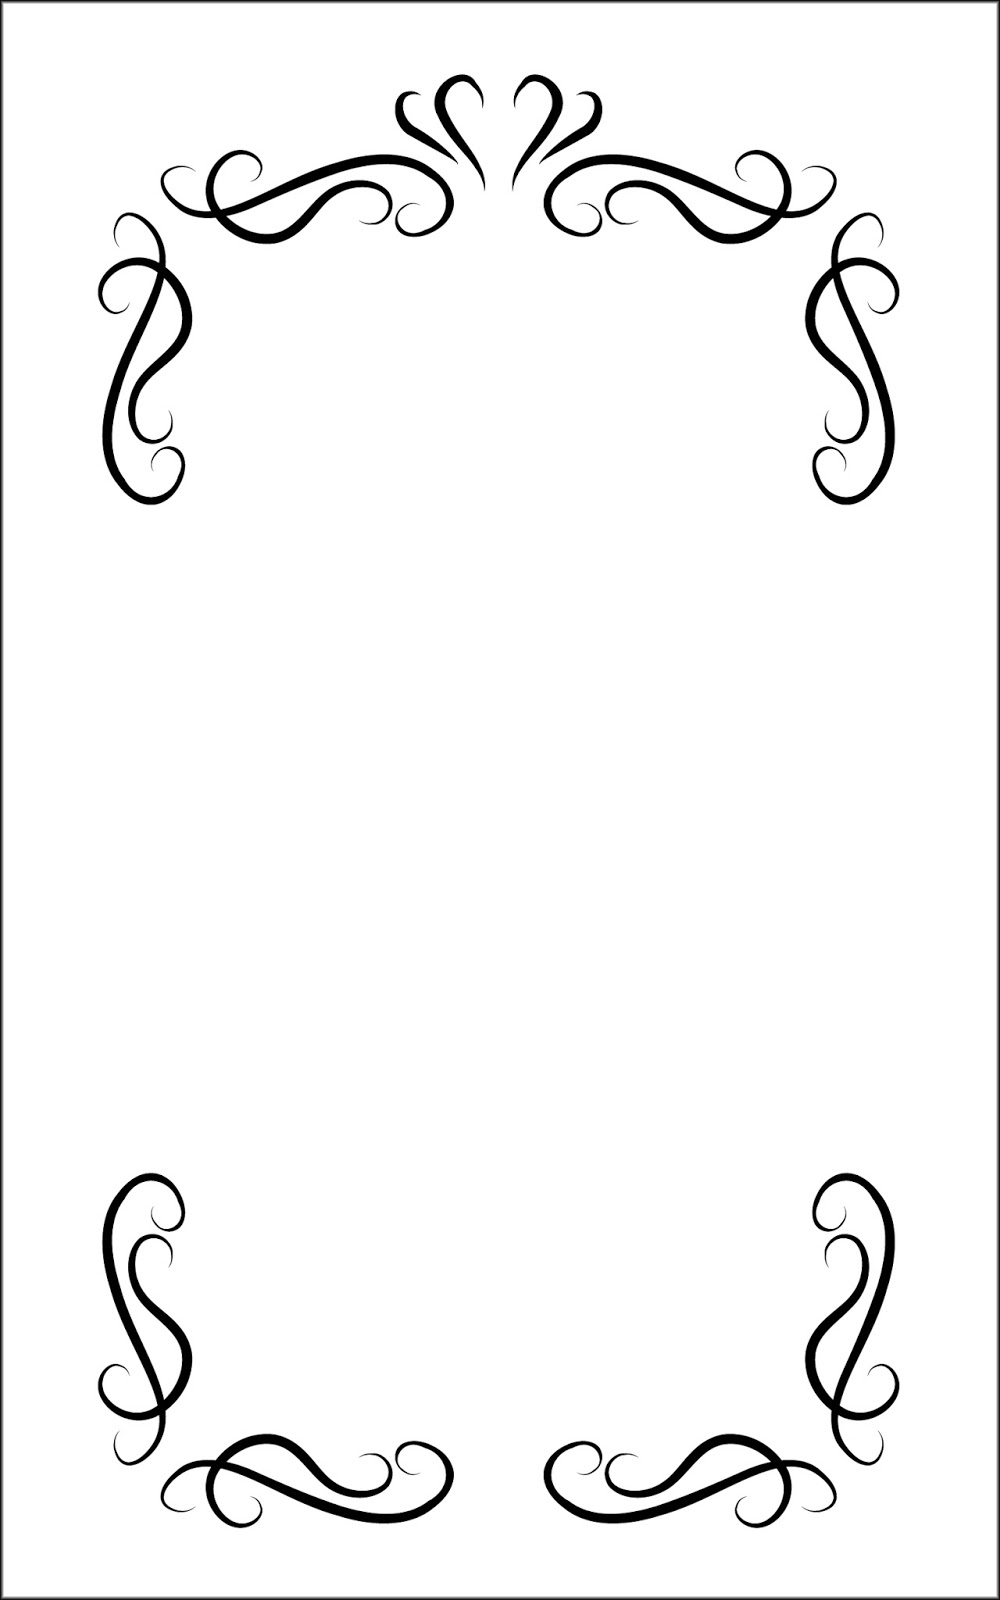 いーブックデザイン 電子書籍用表紙画像フリー素材 033 飾り罫 白